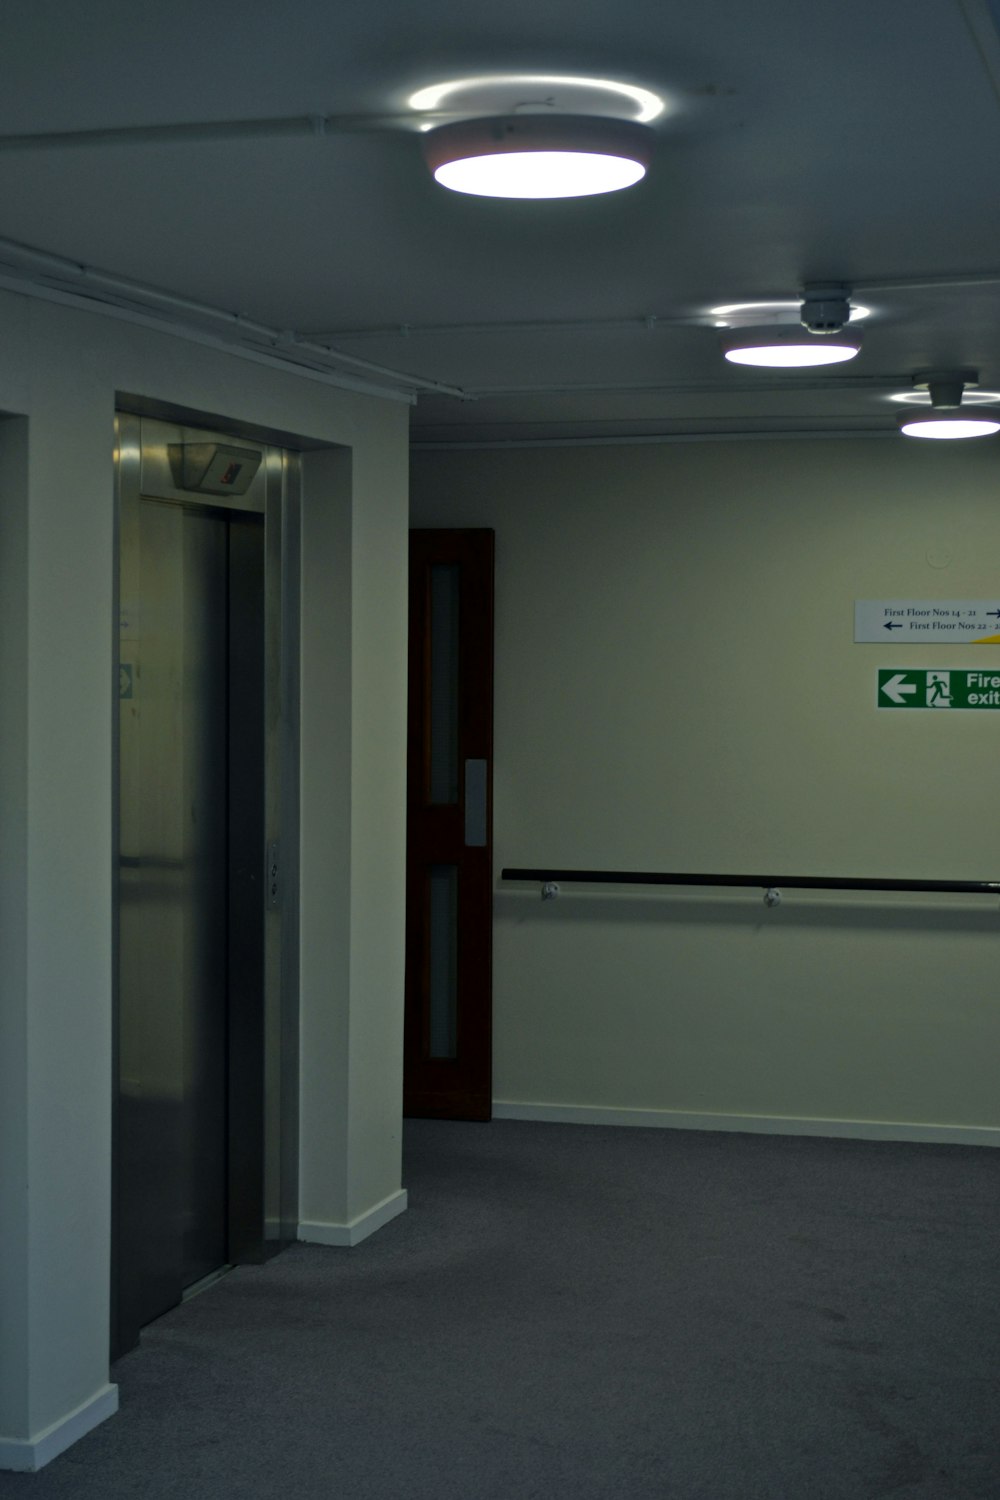 una stanza vuota con una porta chiusa e un cartello sul muro